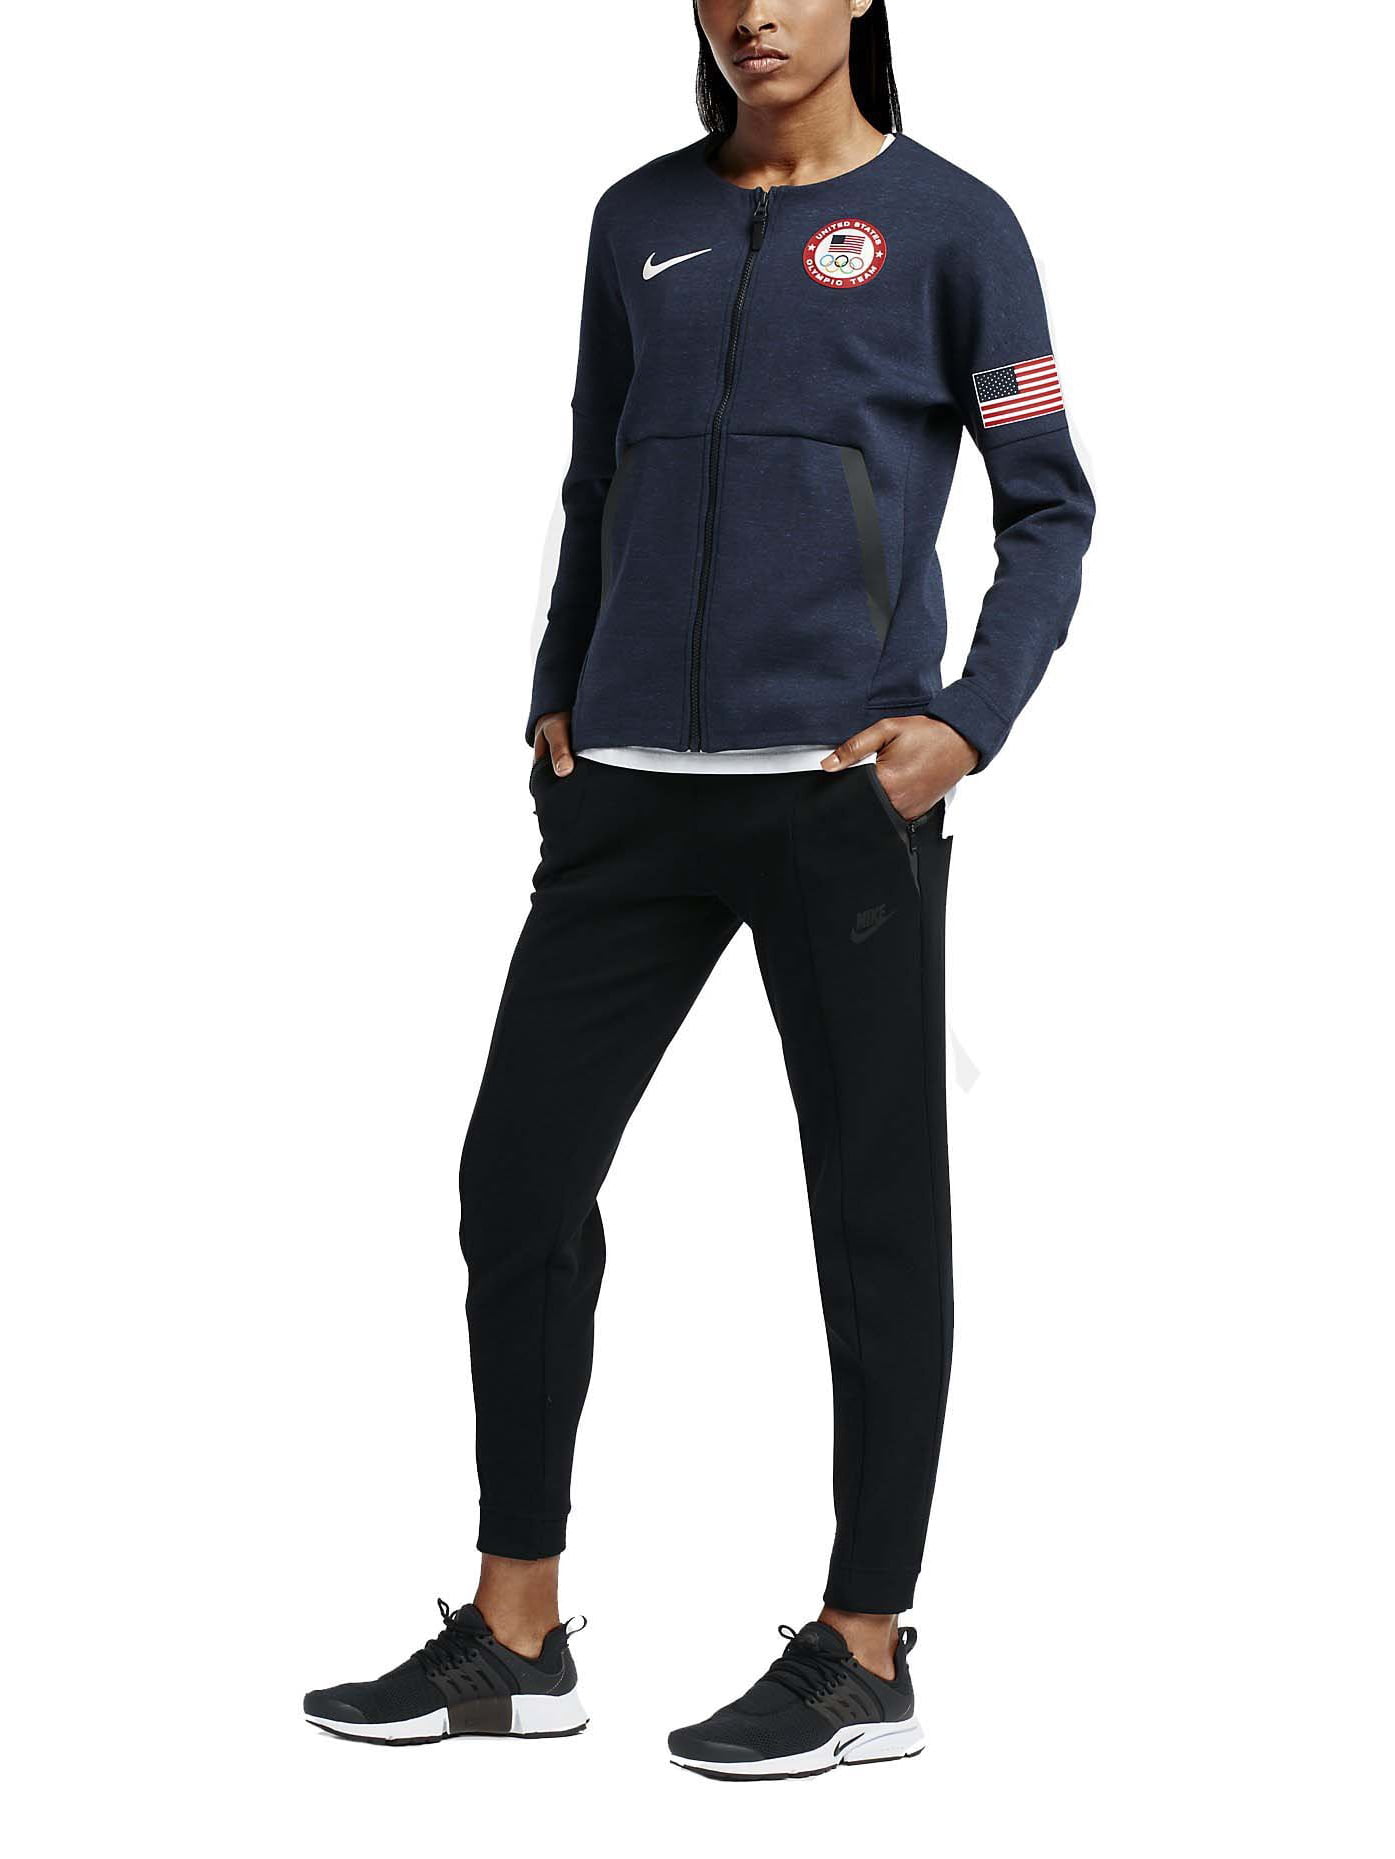 Nike Women's Team USA Full Zip Tech Fleece Jacket-Obsidian Heather